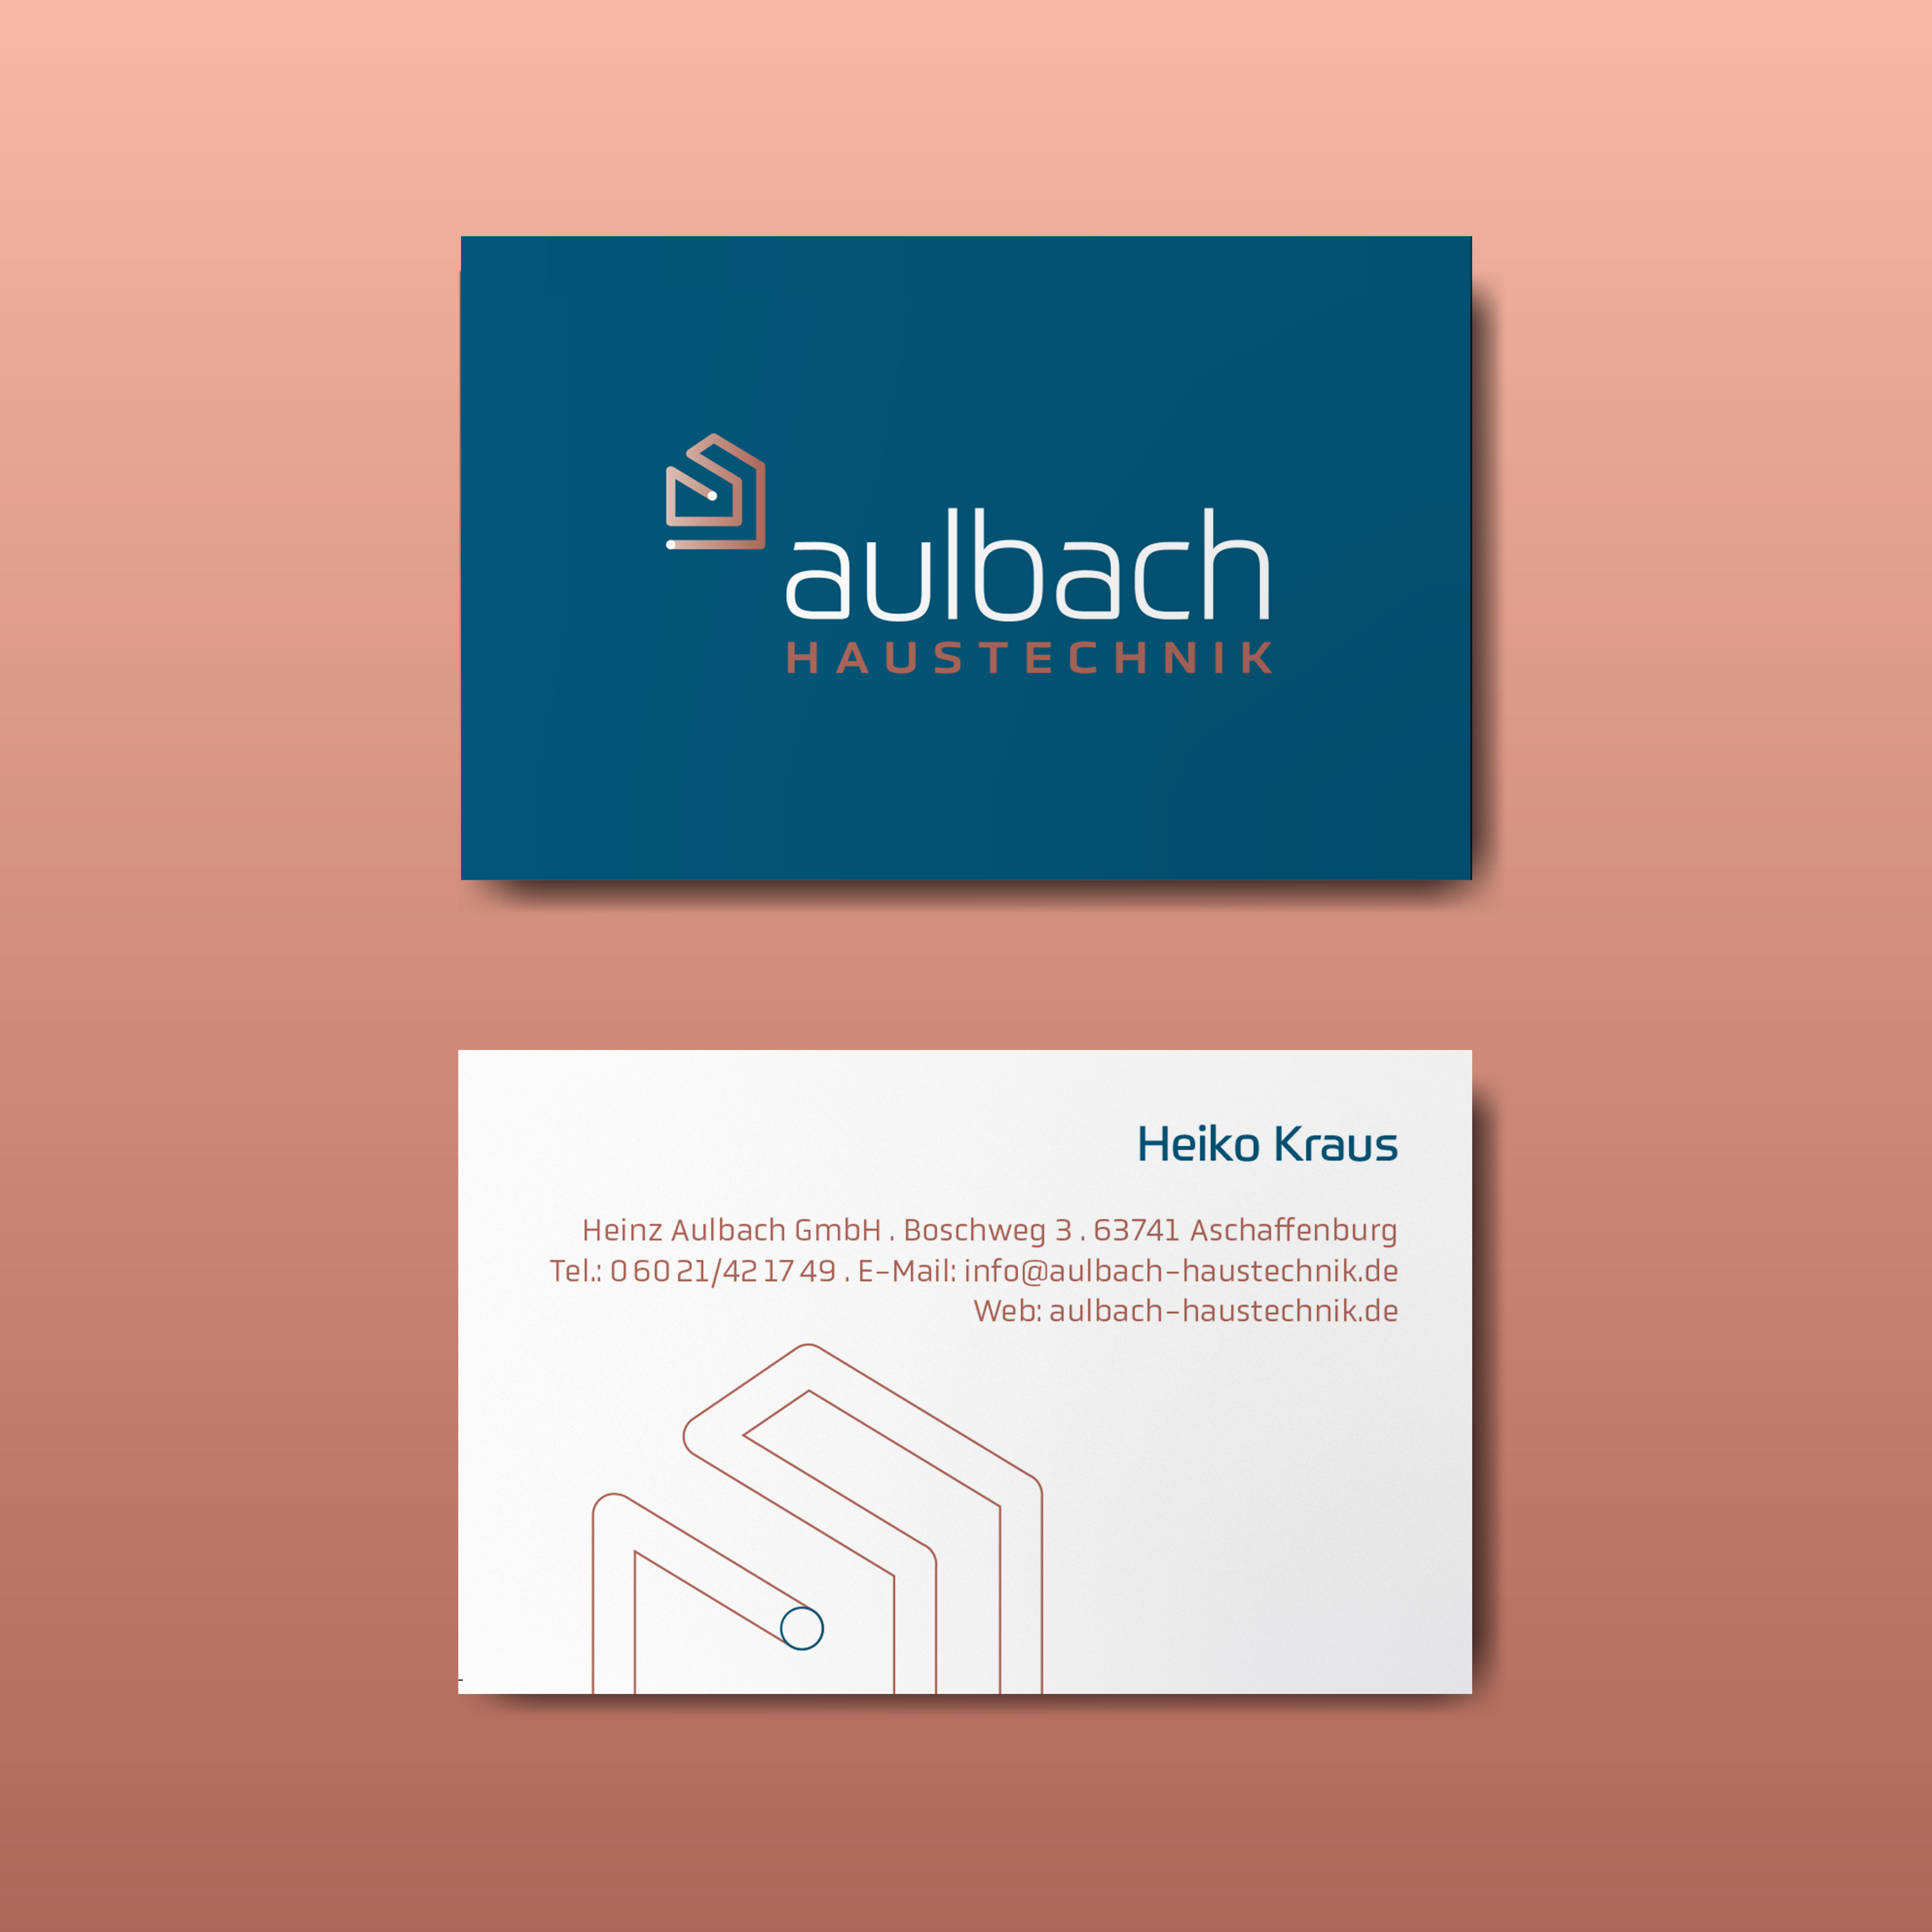 Aulbach Haustechnik Visitenkarten